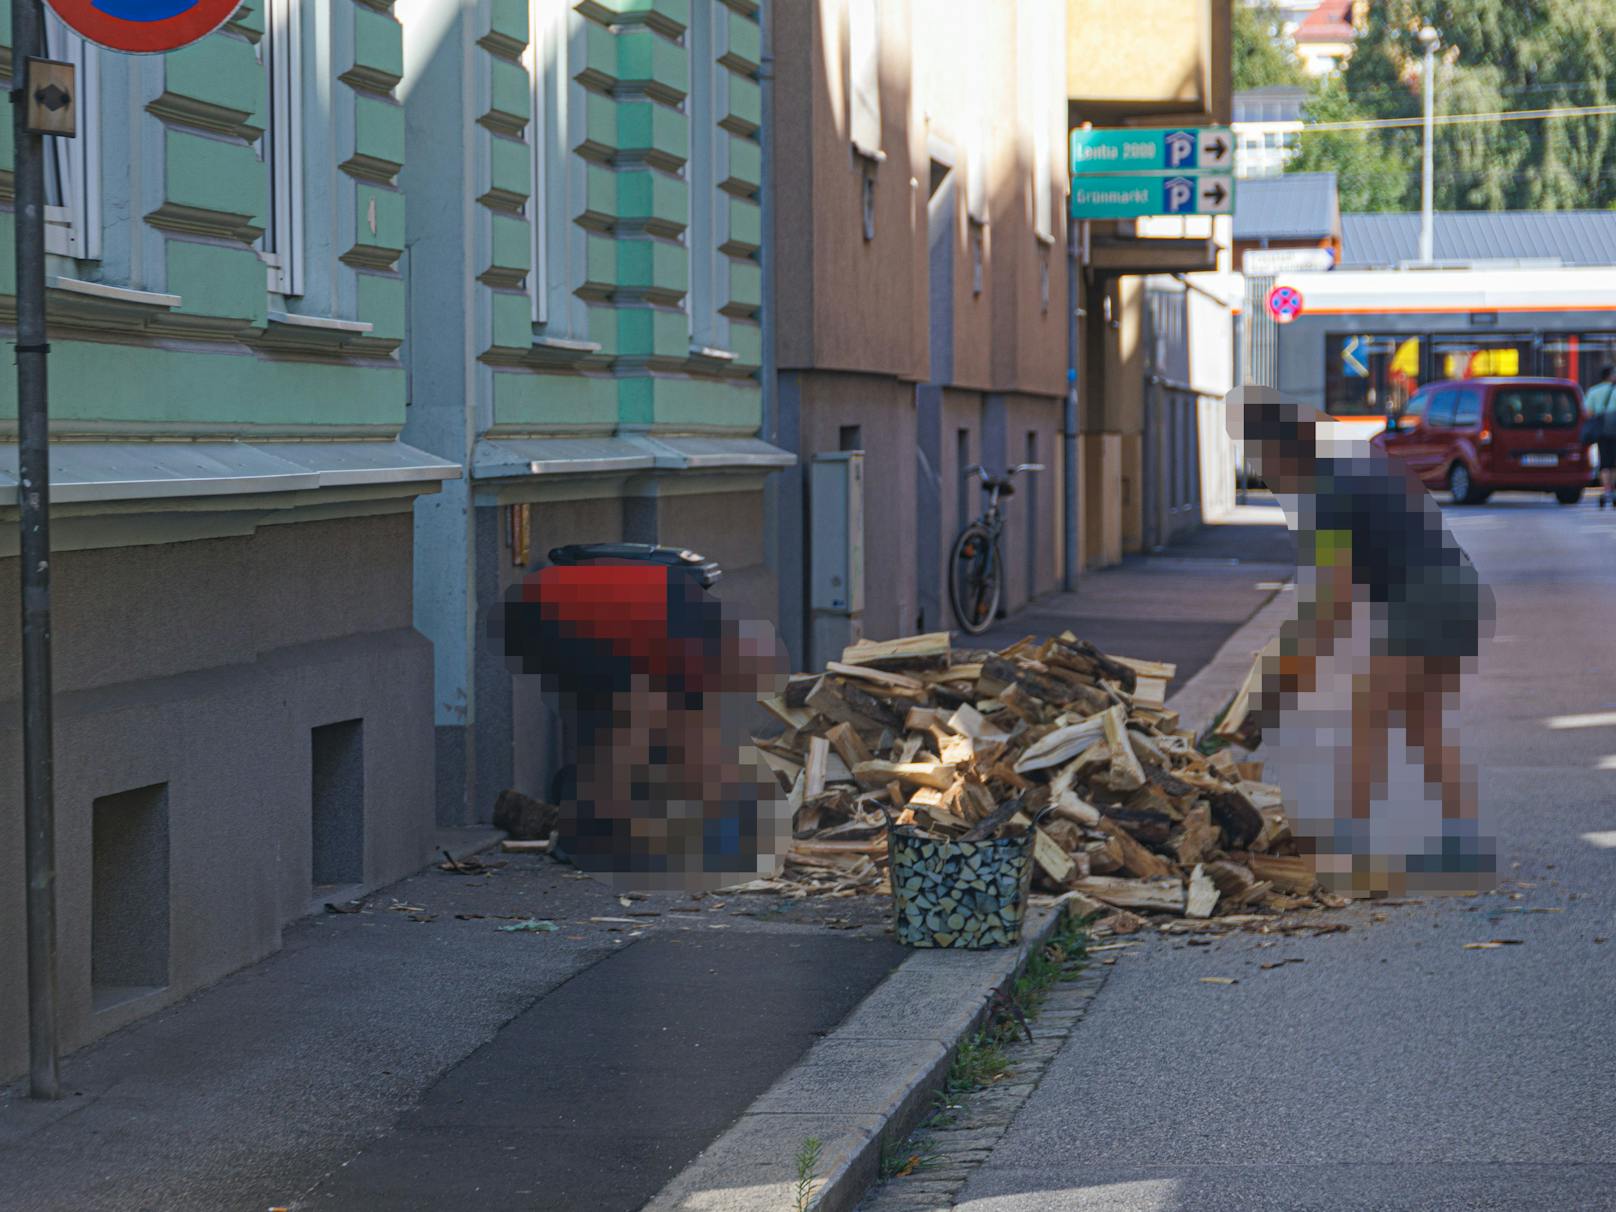 Mitten in der Linzer Innenstadt haben Anwohner offenbar Brennholz für den Winter eingelagert.